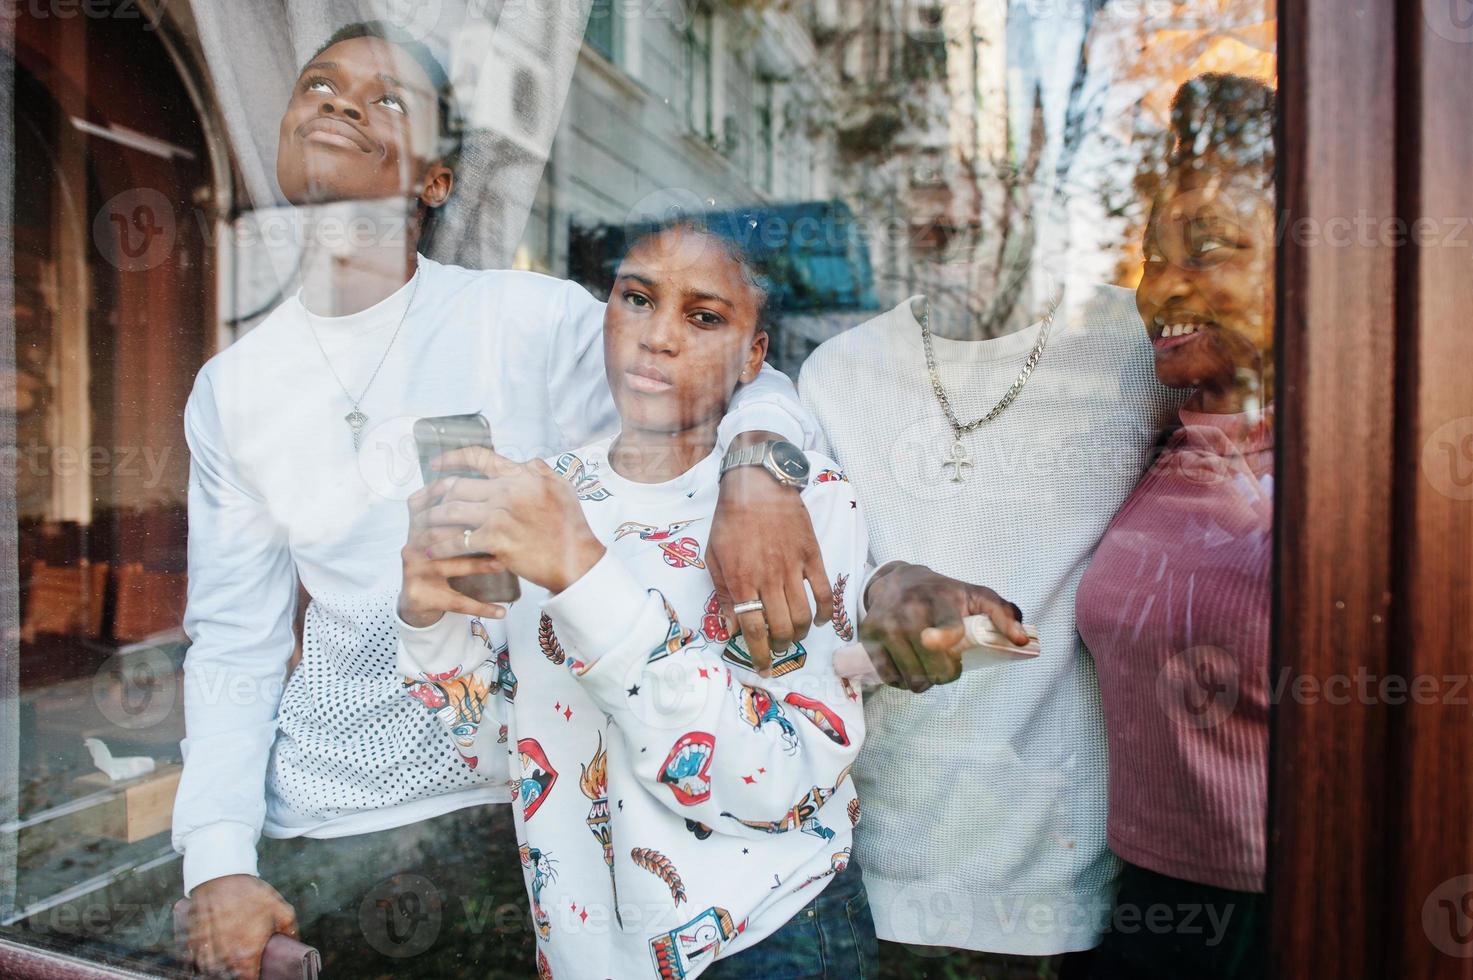 amigos africanos felices charlando en el café. grupo de personas negras reunidas en un restaurante contra el cristal de la ventana. foto